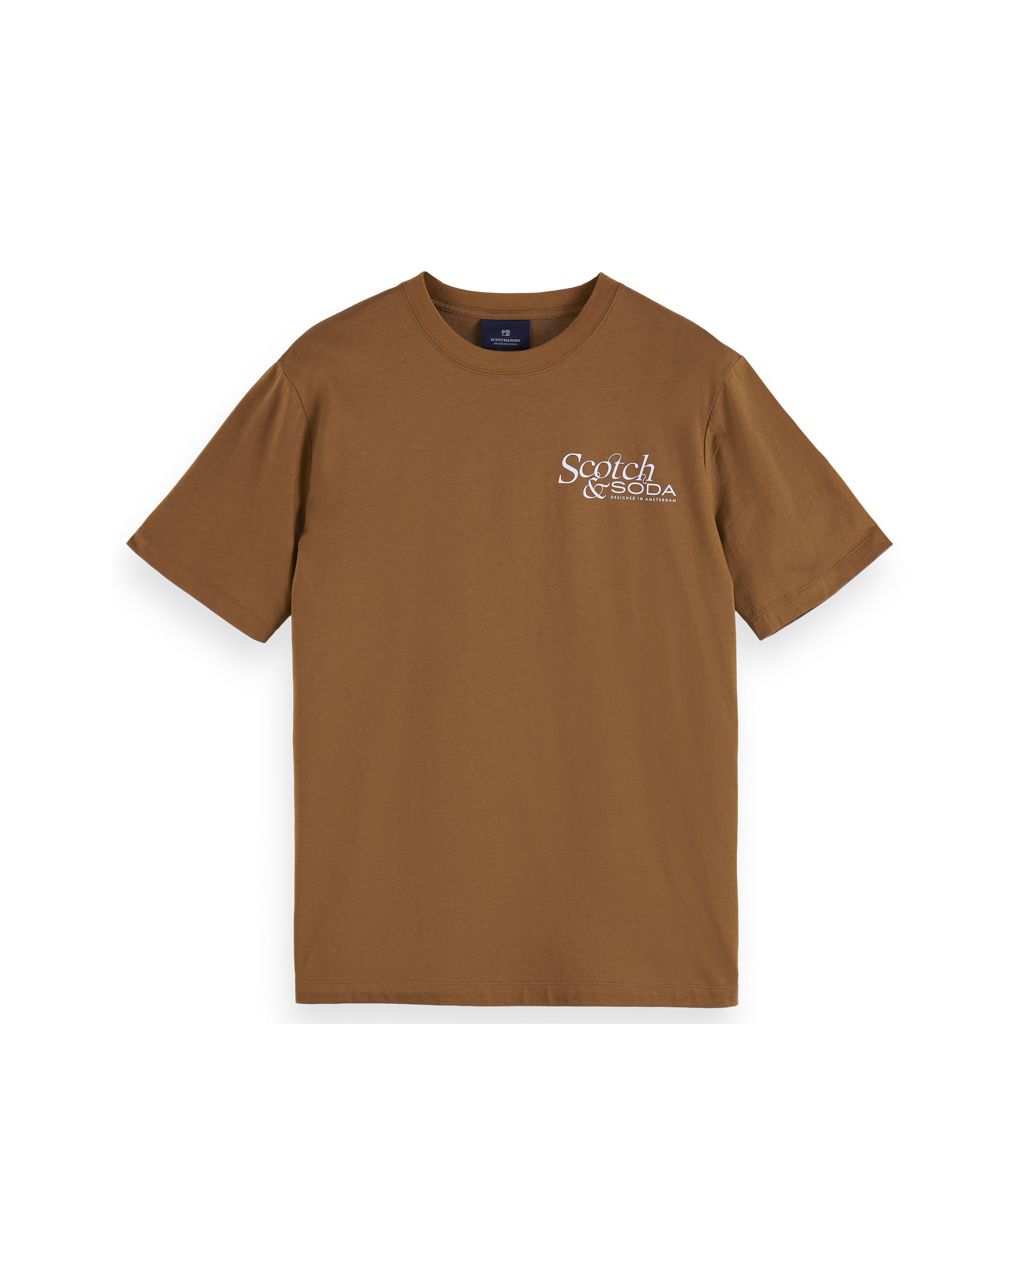 Scotch & Soda T-shirt KM Bruin 069904-001-L